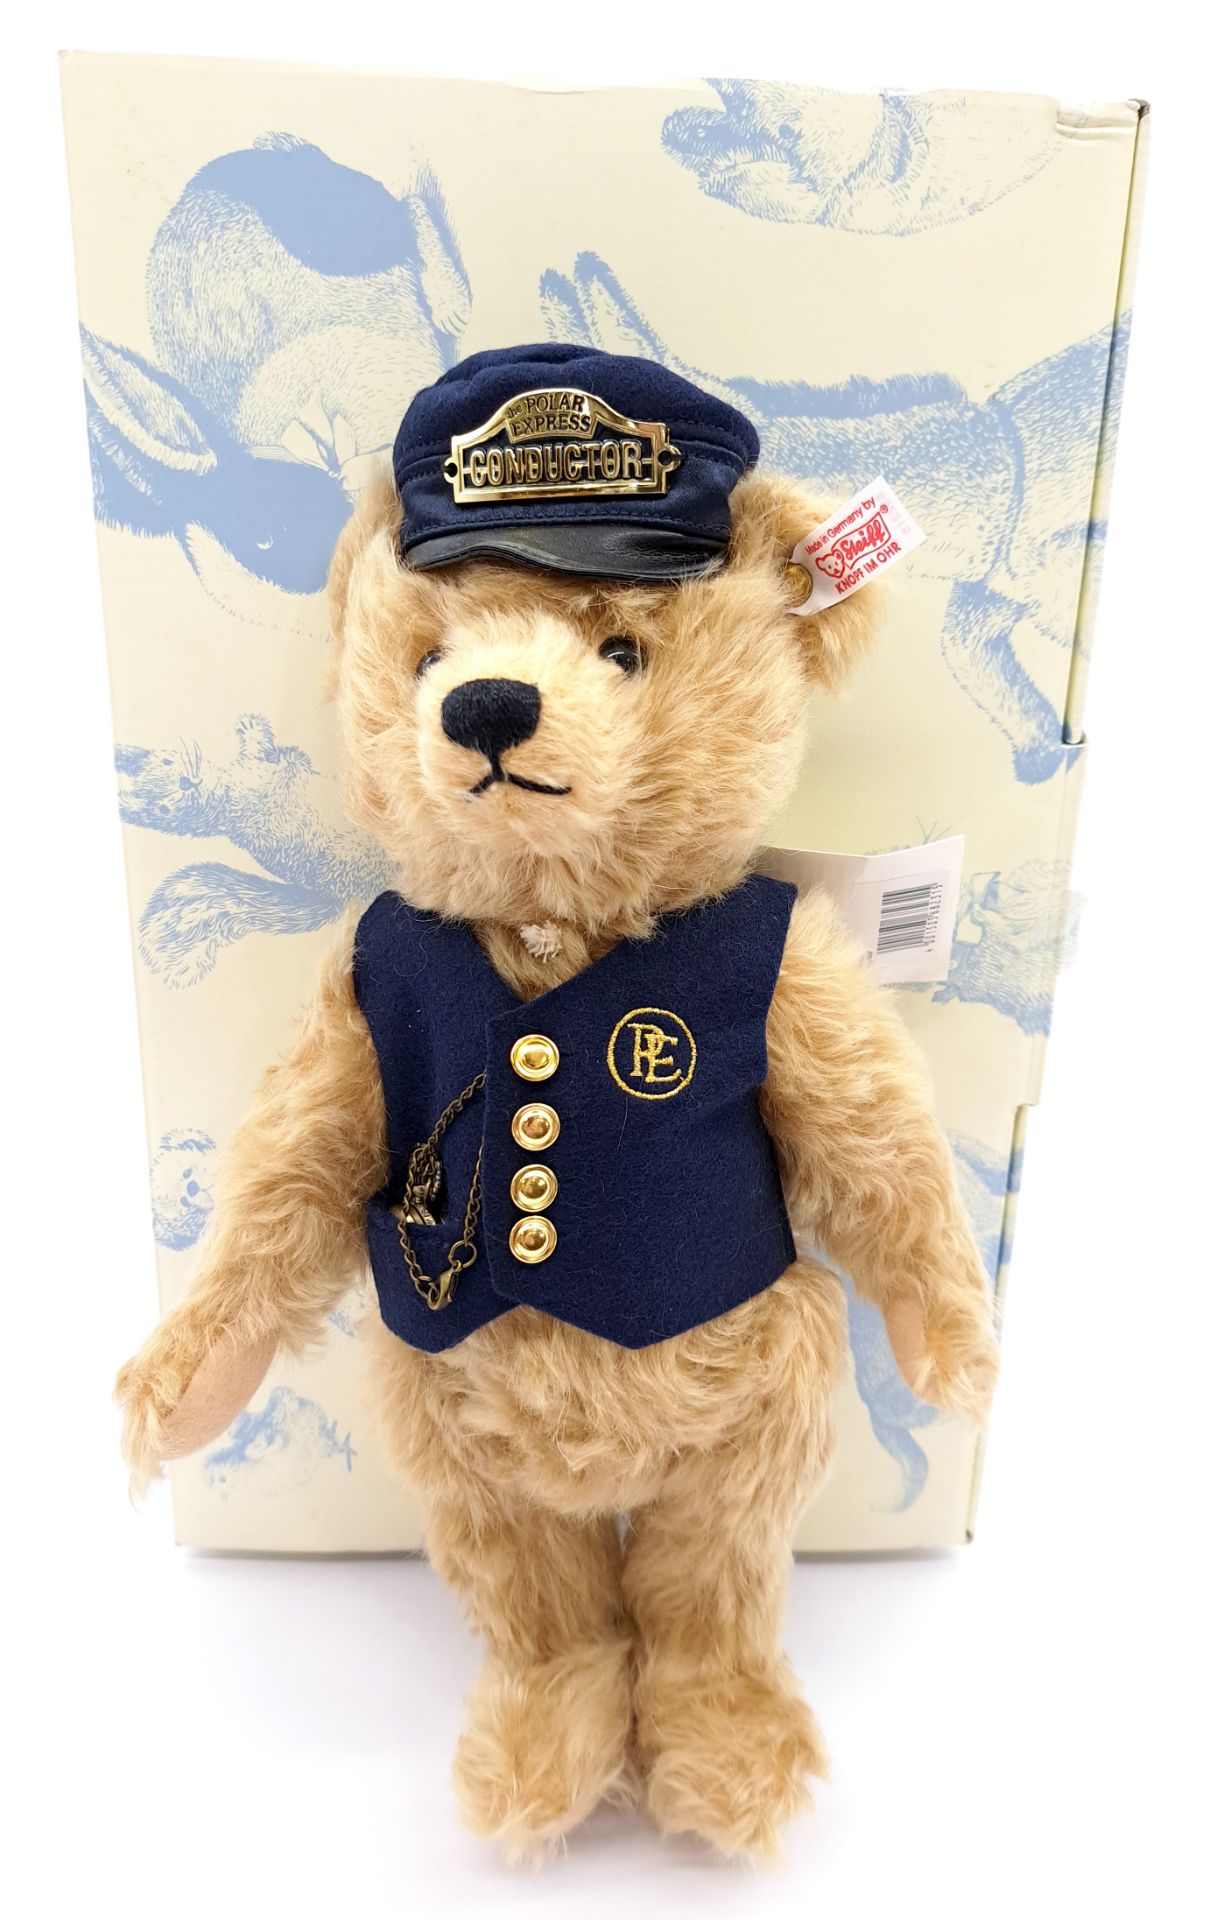 Steiff The Polar Express Conductor teddy bear